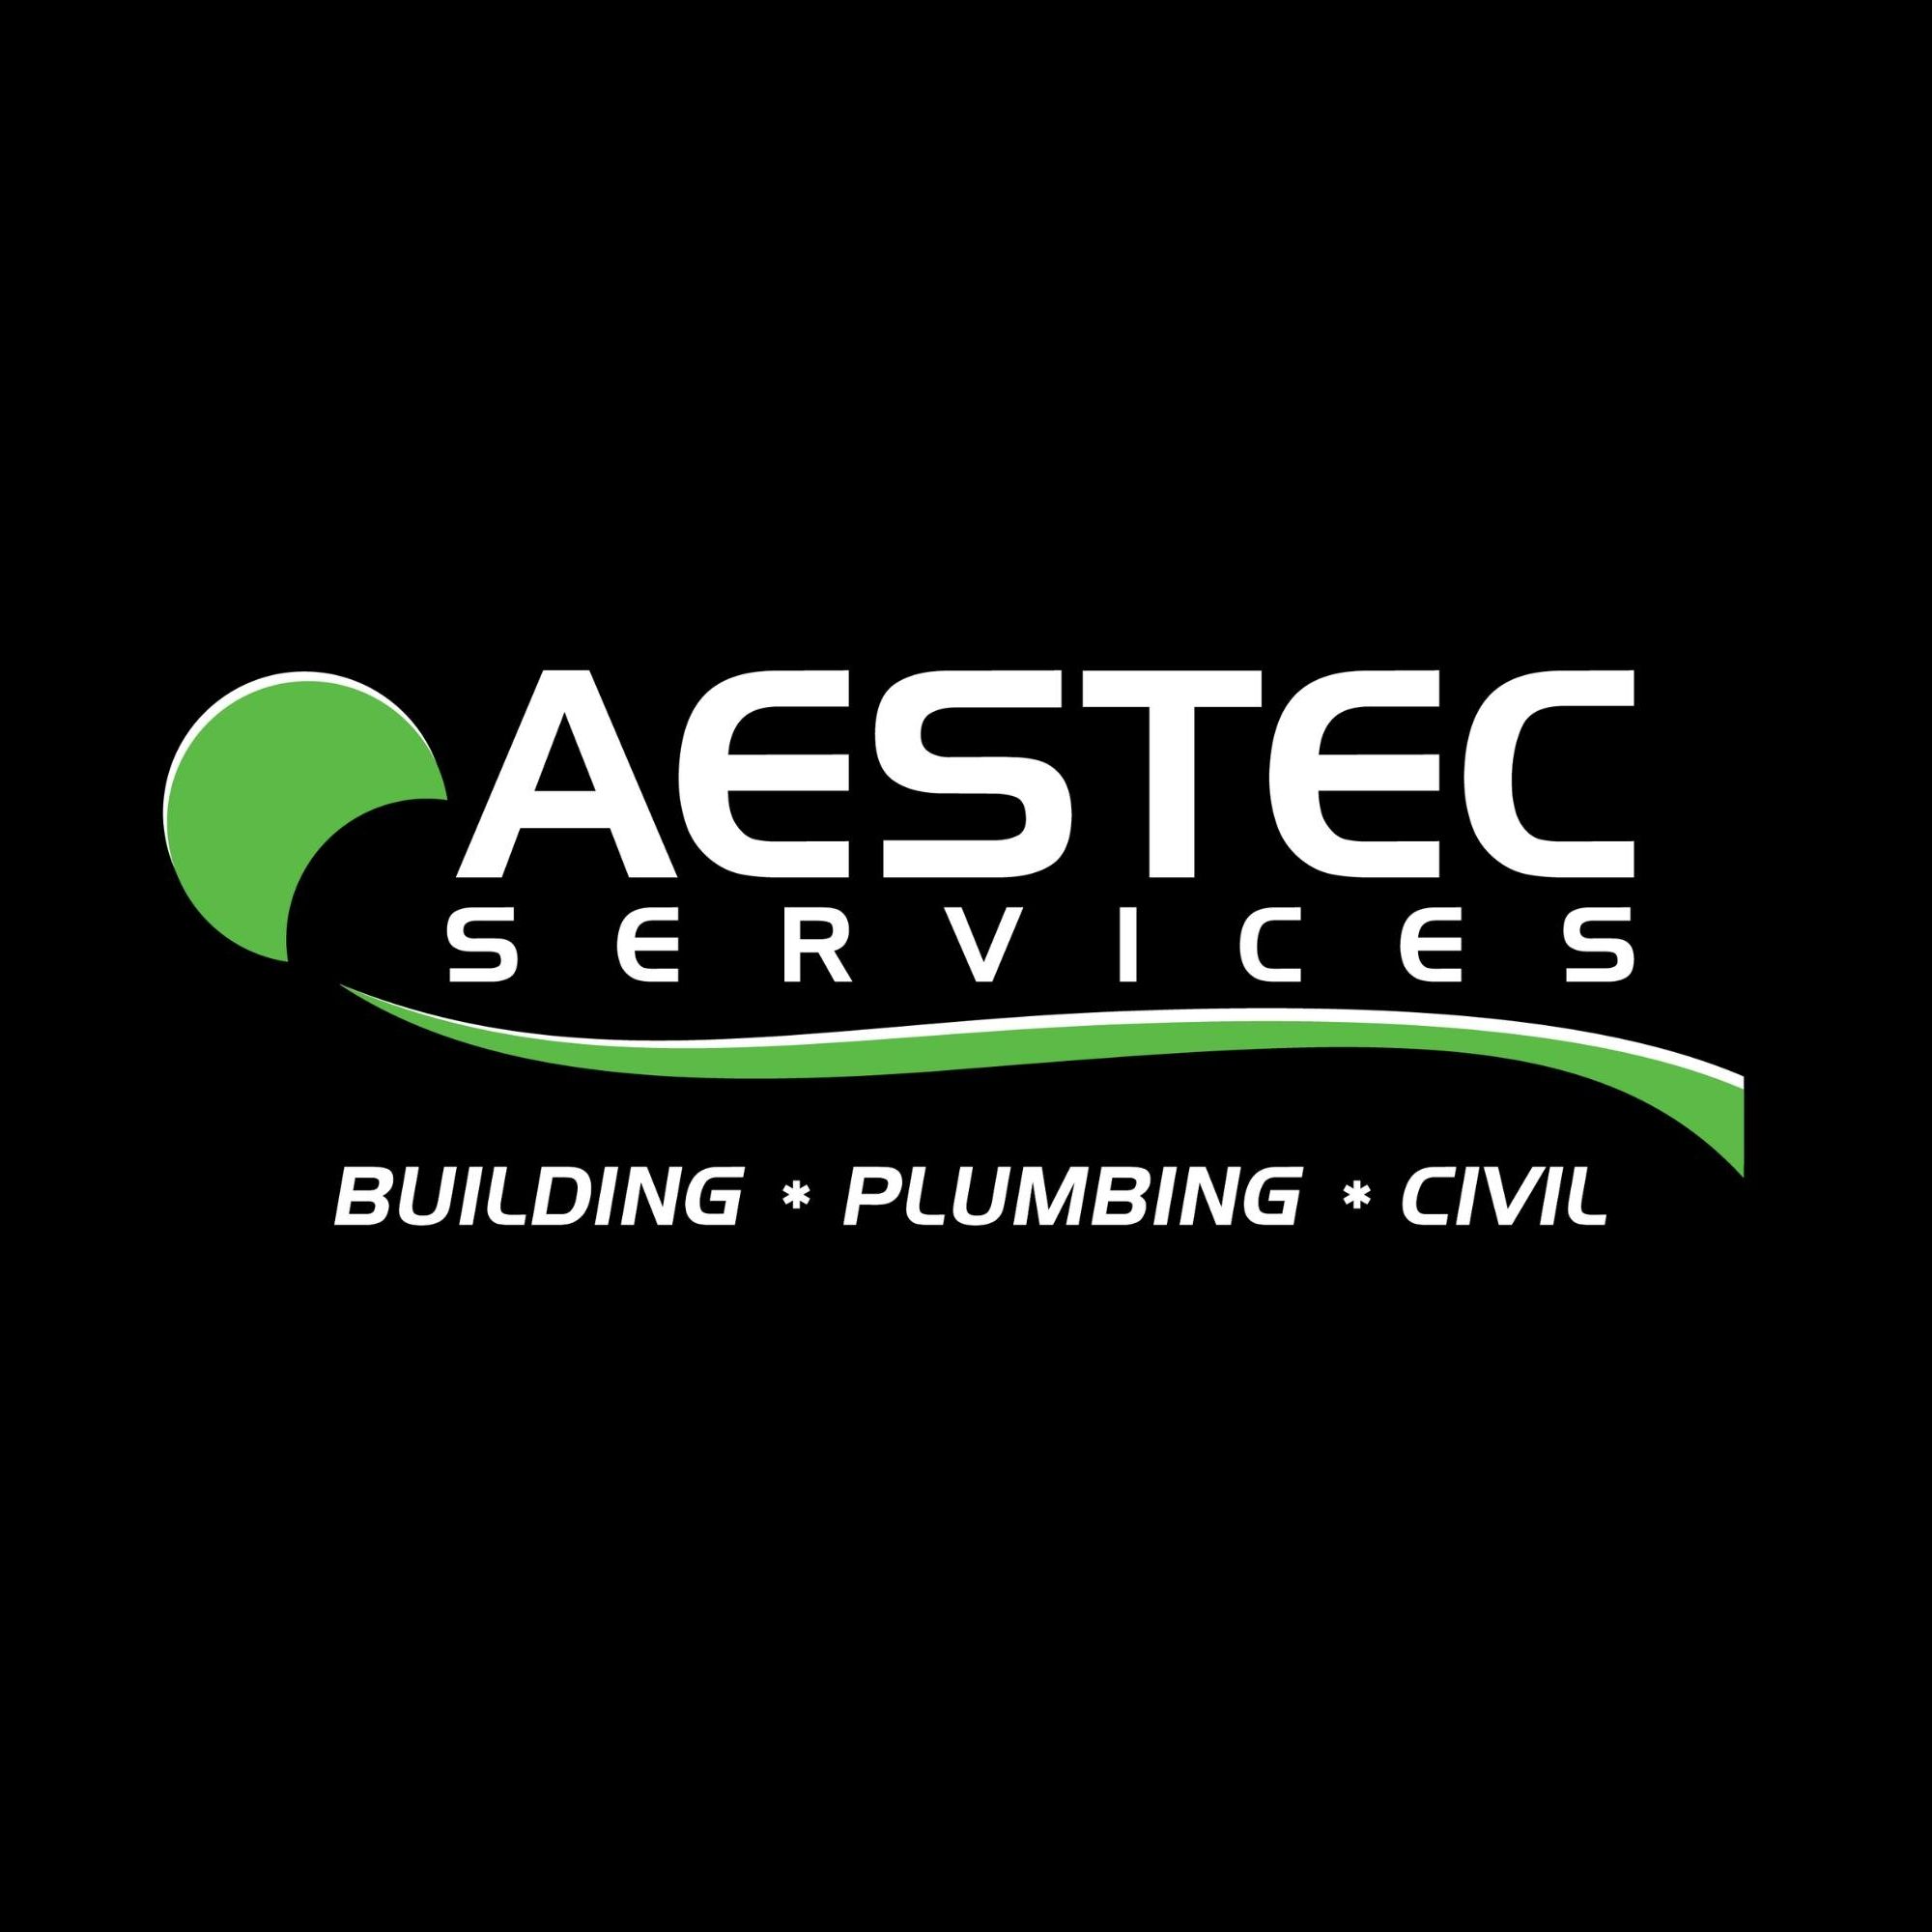 Aestec Services